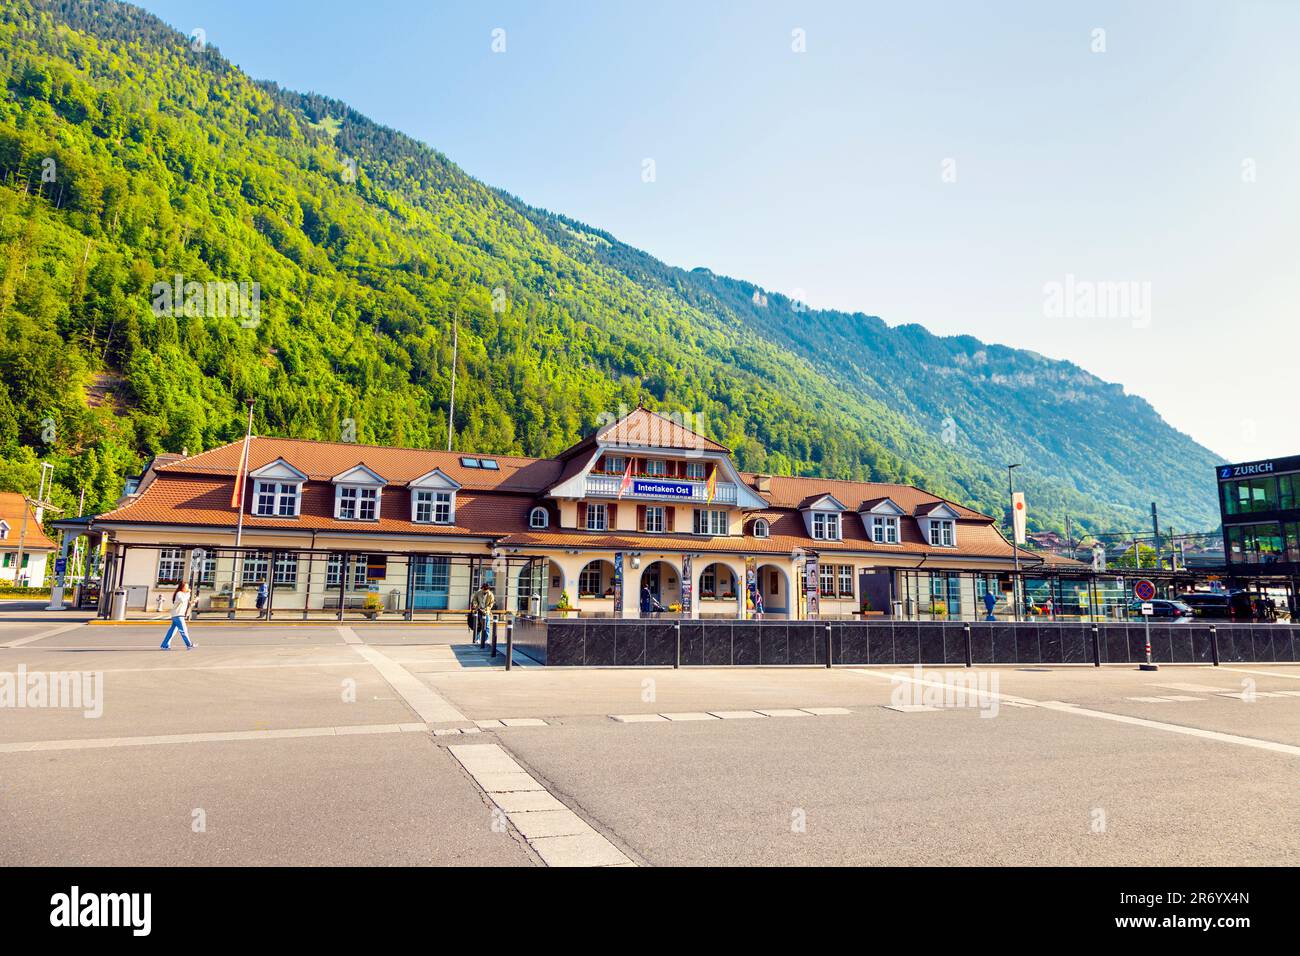 Esterno della stazione ferroviaria di Interlaken Ost, Interlaken, Svizzera Foto Stock